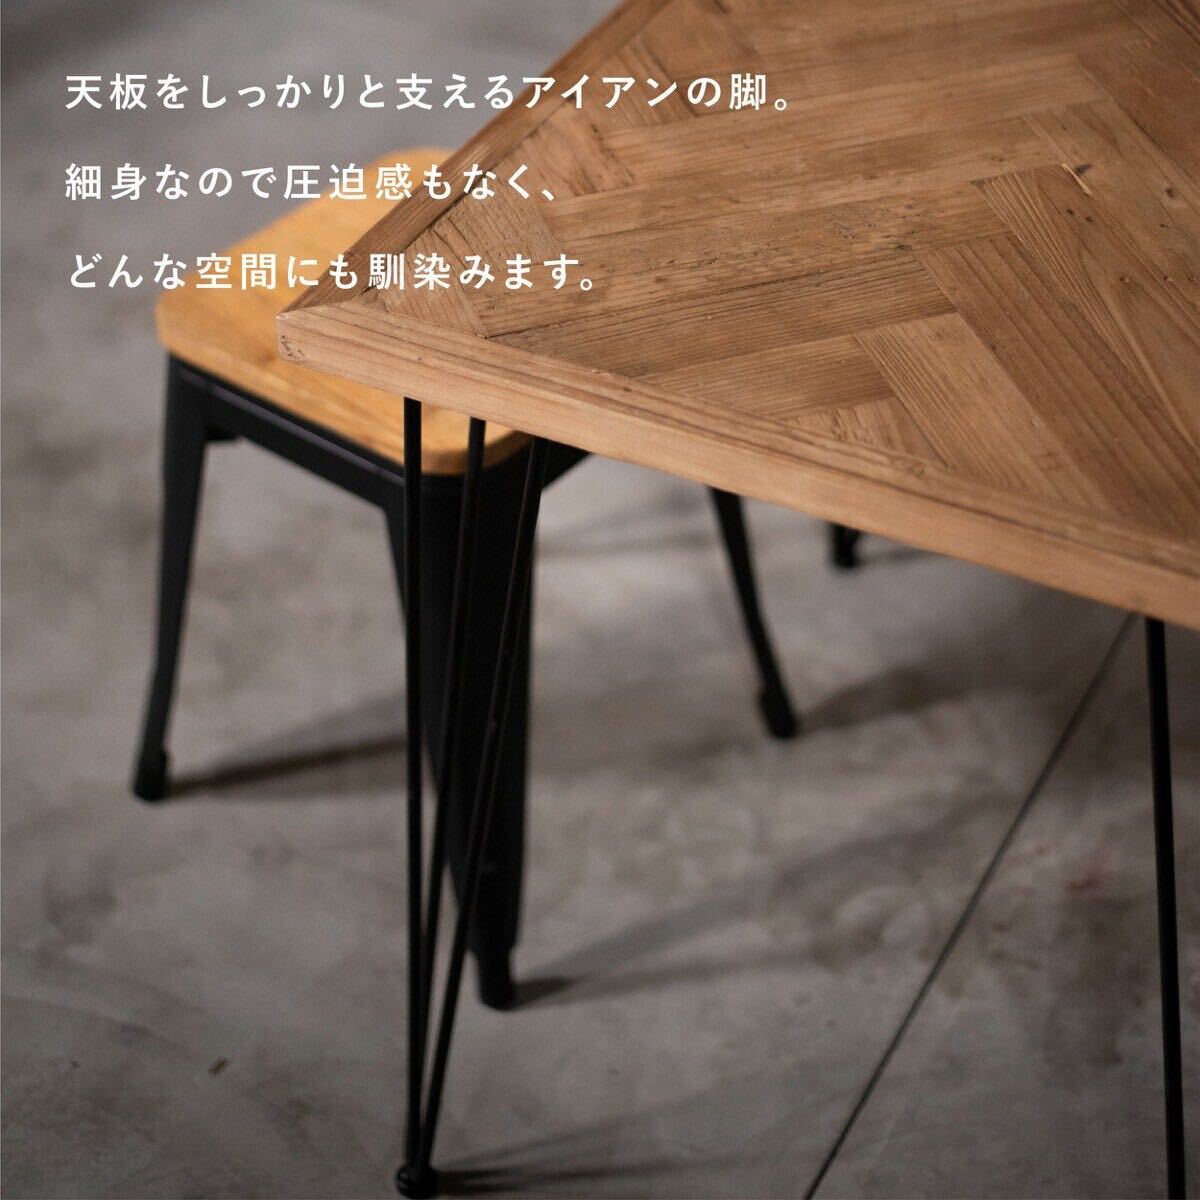 モミ古材×ブラックスチール ヘリンボーン ダイニングテーブル W130 / インダストリアル 作業台 カフェ モダン デスク_画像7